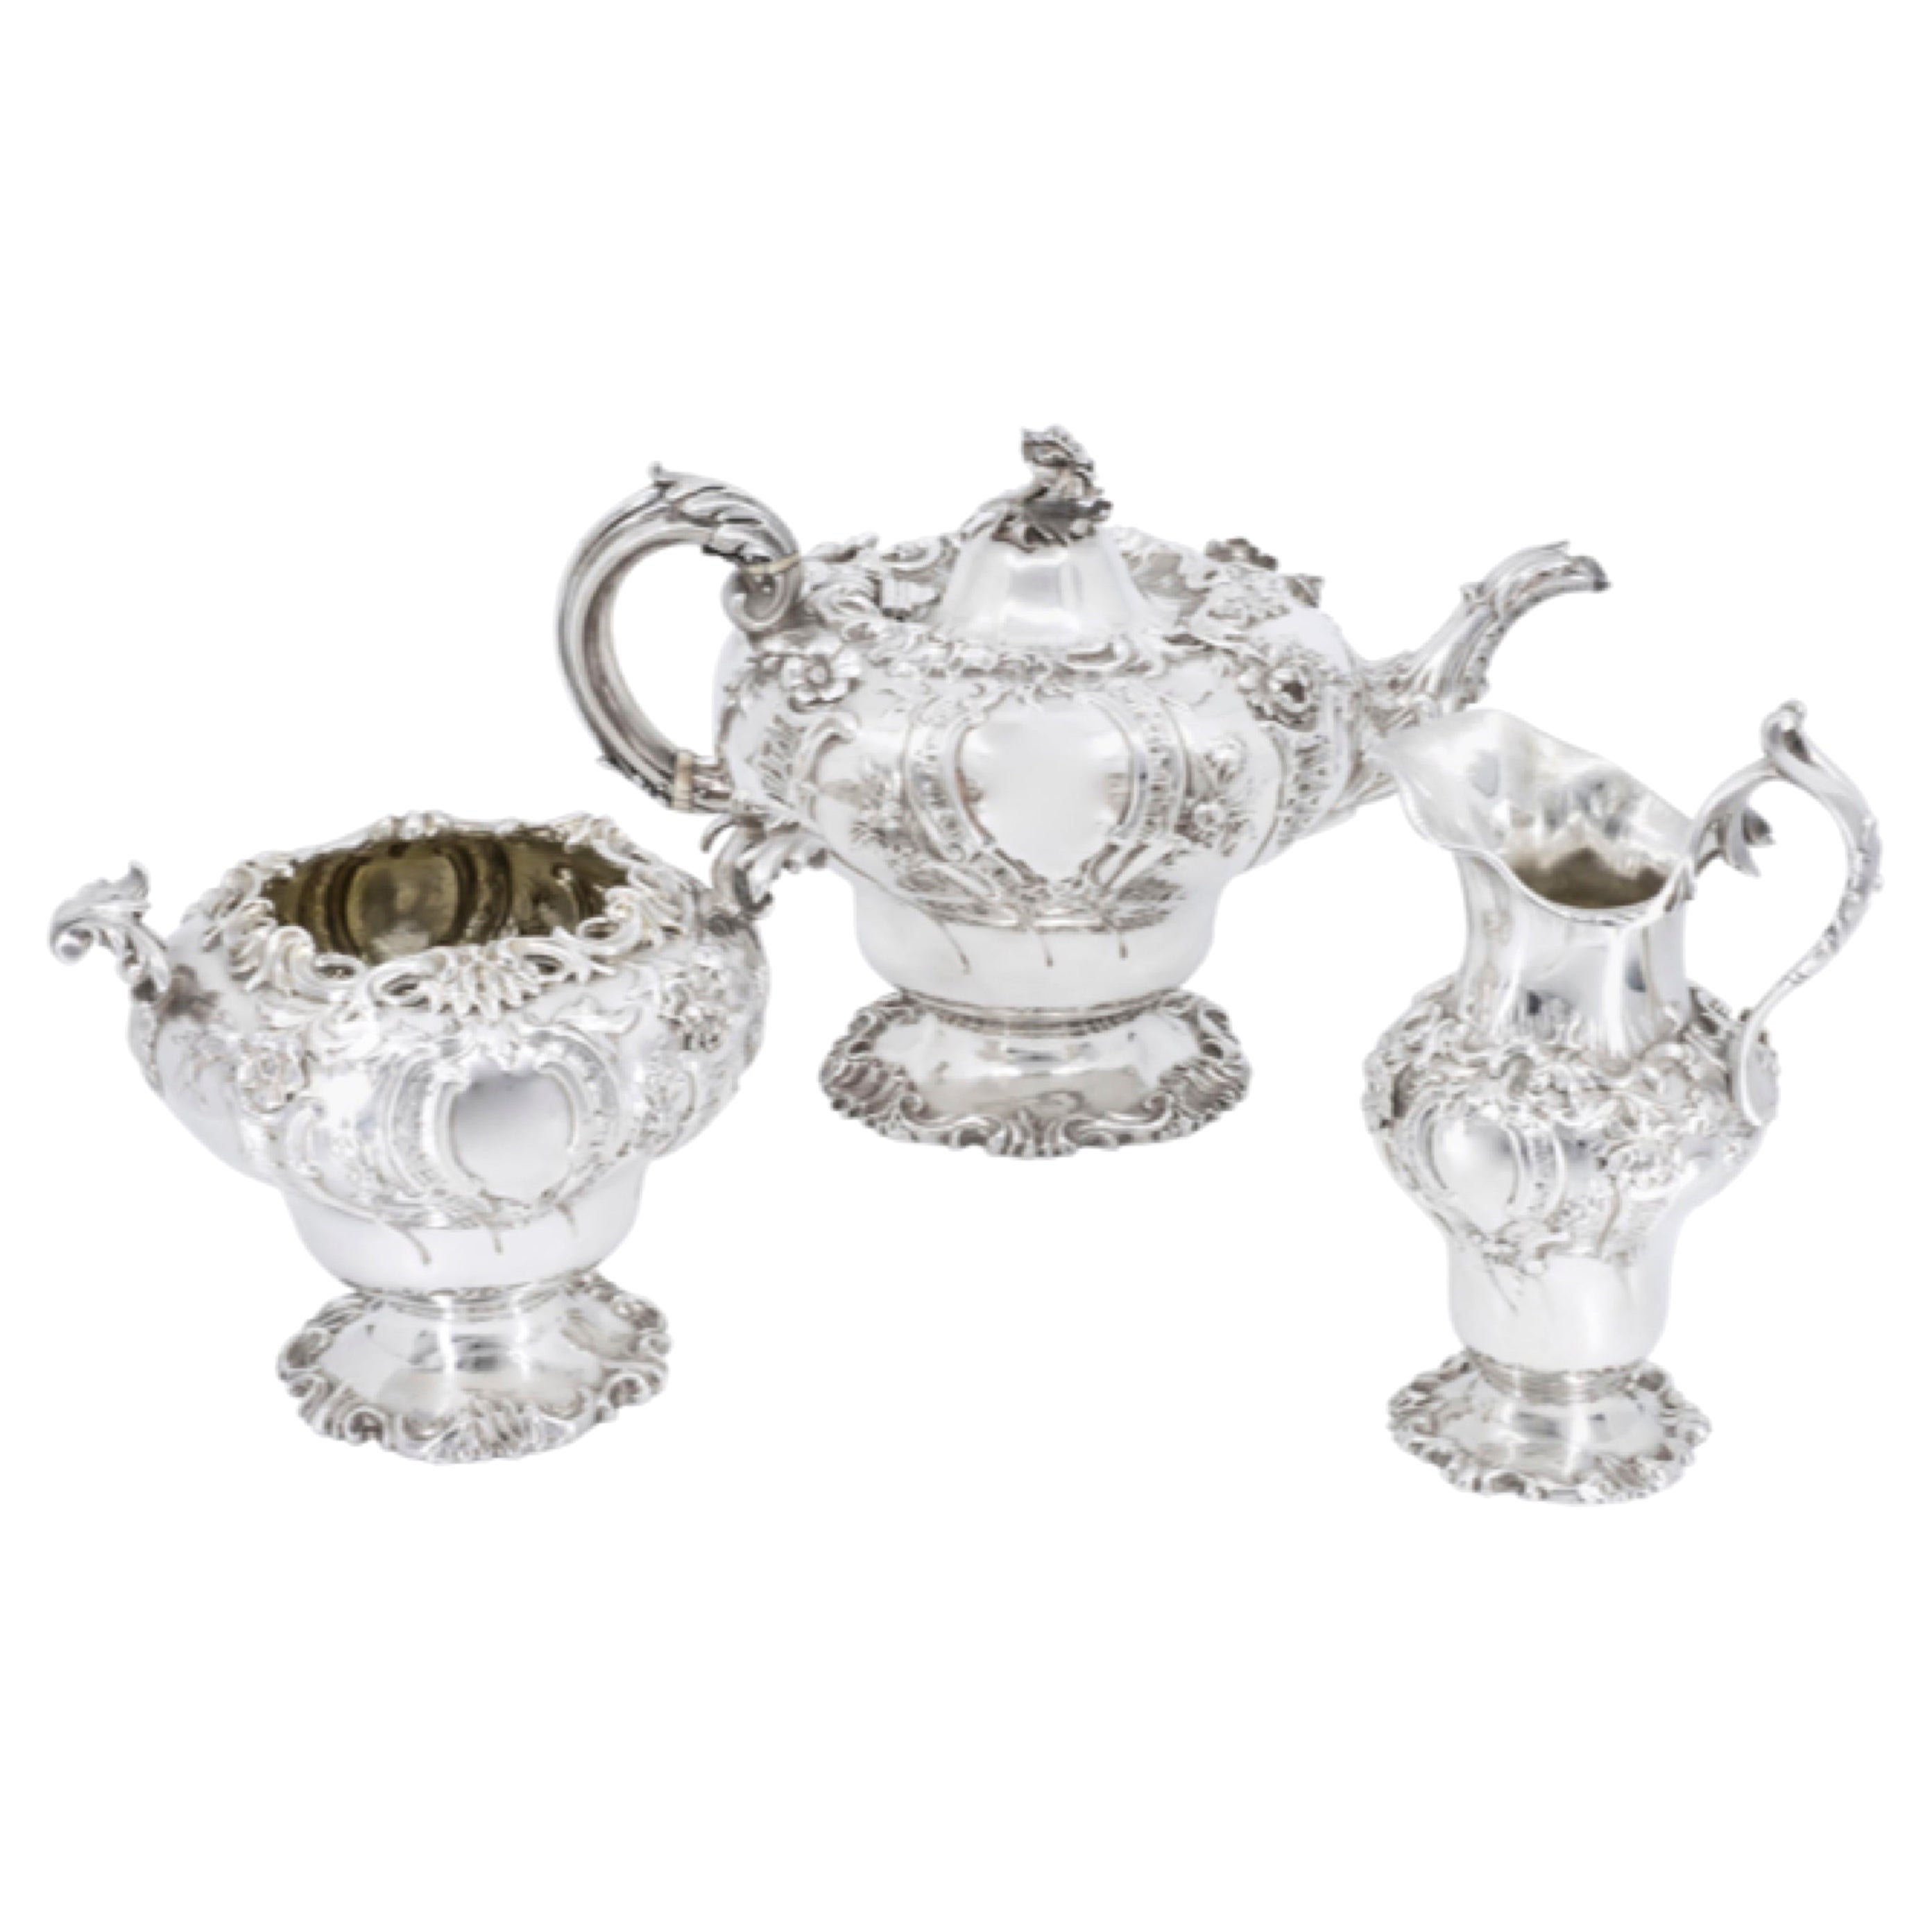 Service à thé anglais, Londres Début du 19e siècle, Charles Fox II, 1801-1872